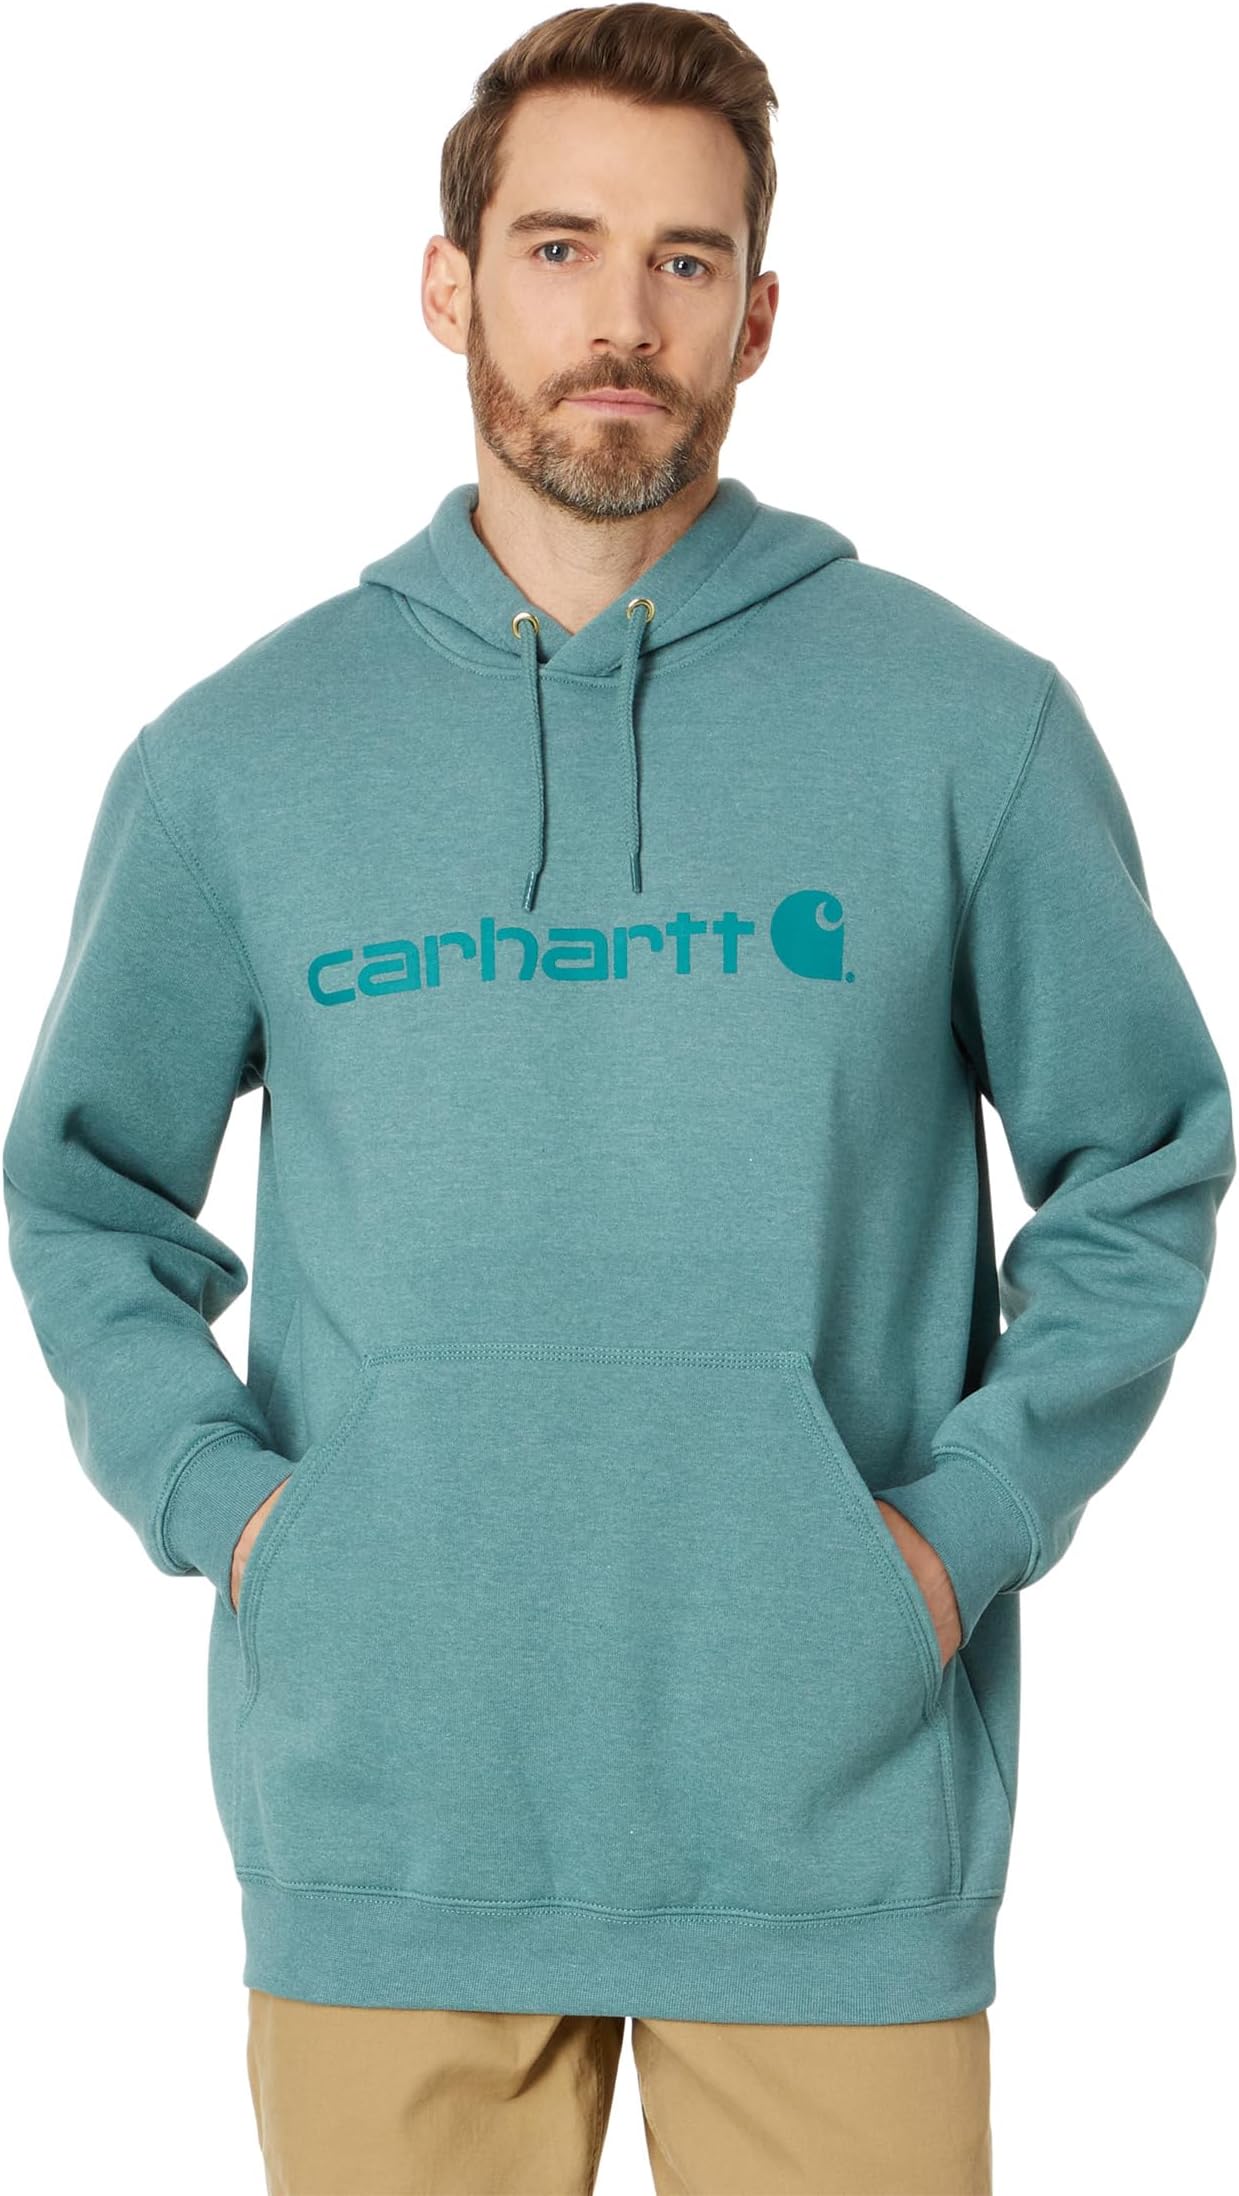 Толстовка средней плотности с фирменным логотипом Carhartt, цвет Sea Pine Heather футболка с фирменным логотипом s s carhartt цвет marmalade heather